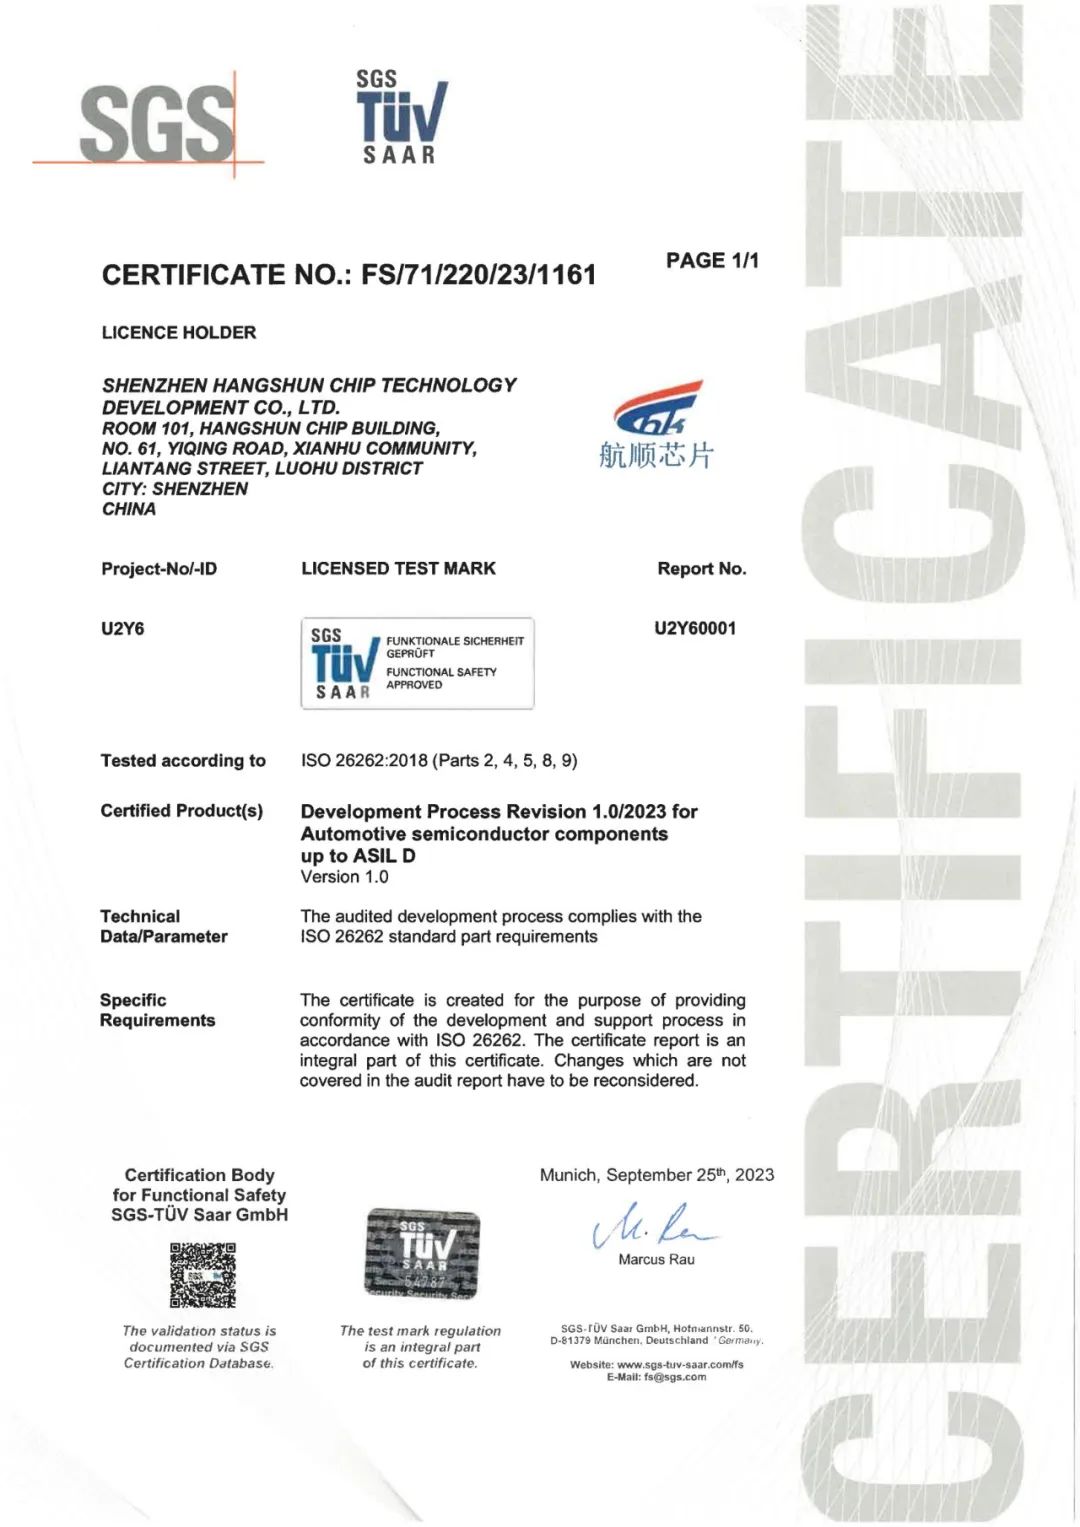 Islot平台芯片获得ISO 26262最高等级ASIL D认证，汽车功能安全管理体系再升级